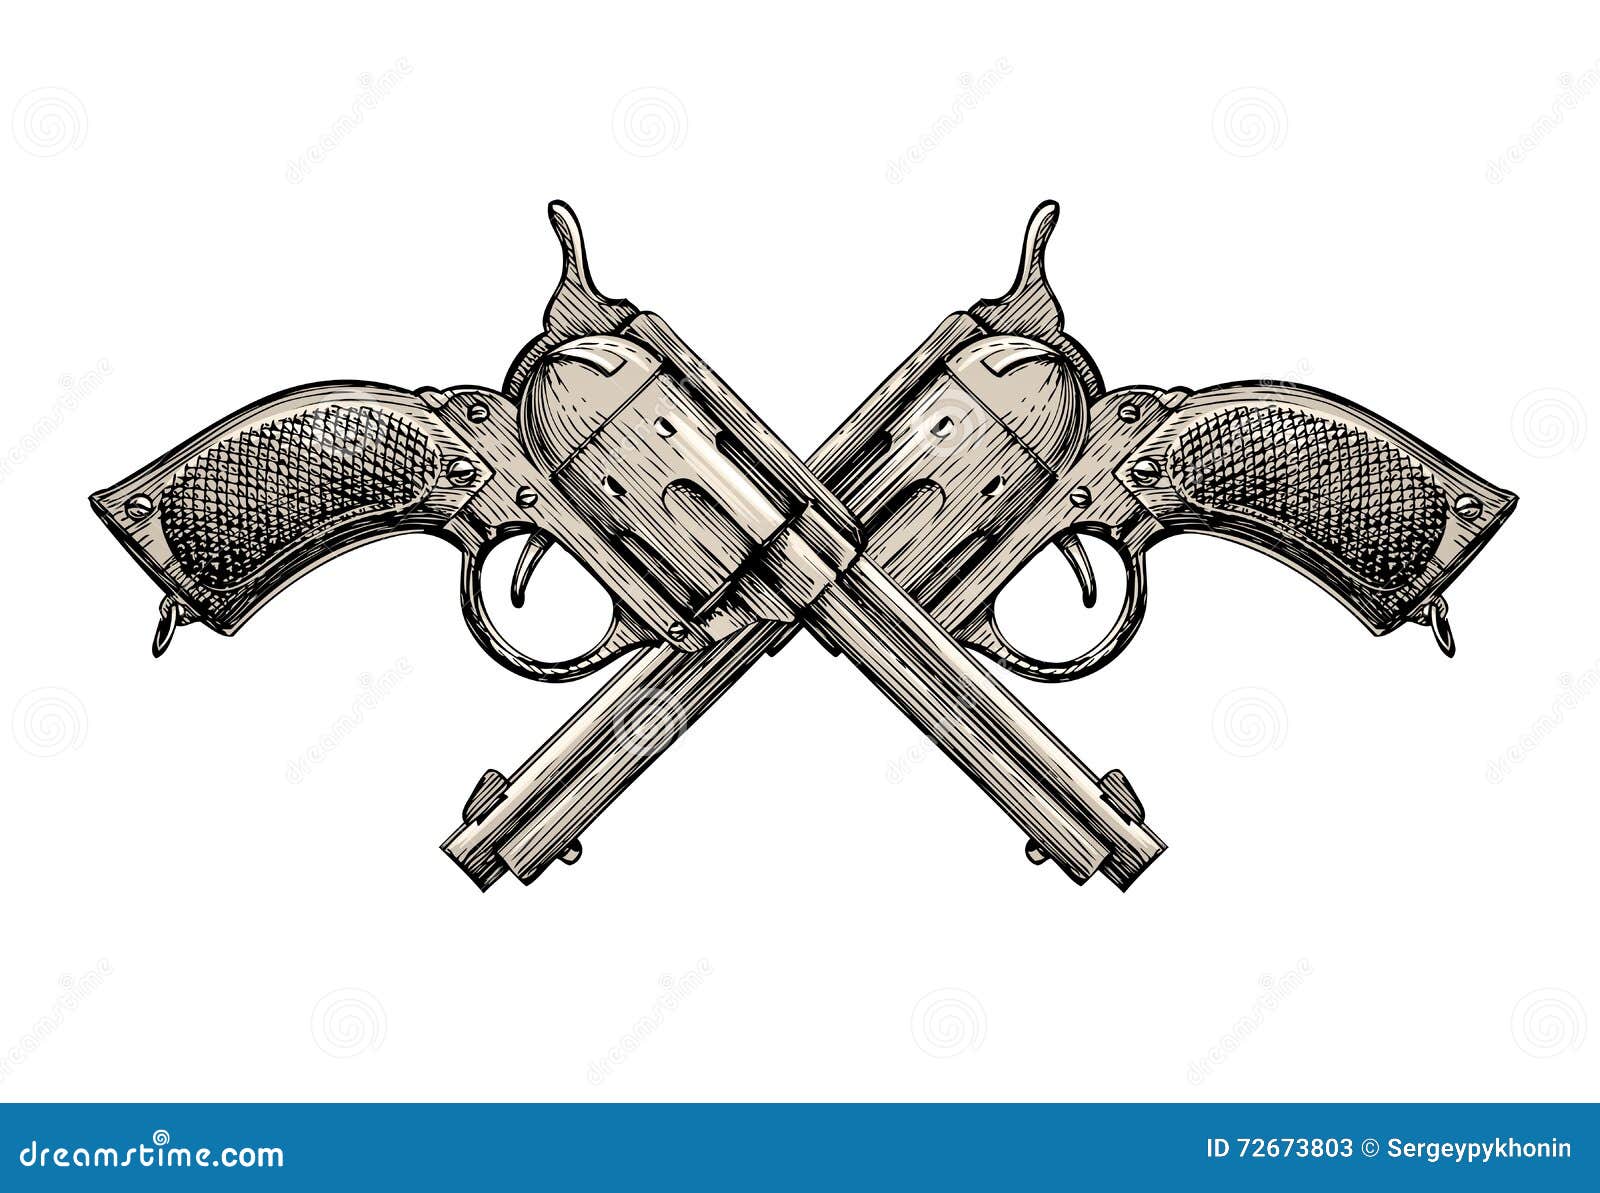 Armas De Fuego Ilustraciones Stock, Vectores, Y Clipart – (5,472  Ilustraciones Stock)